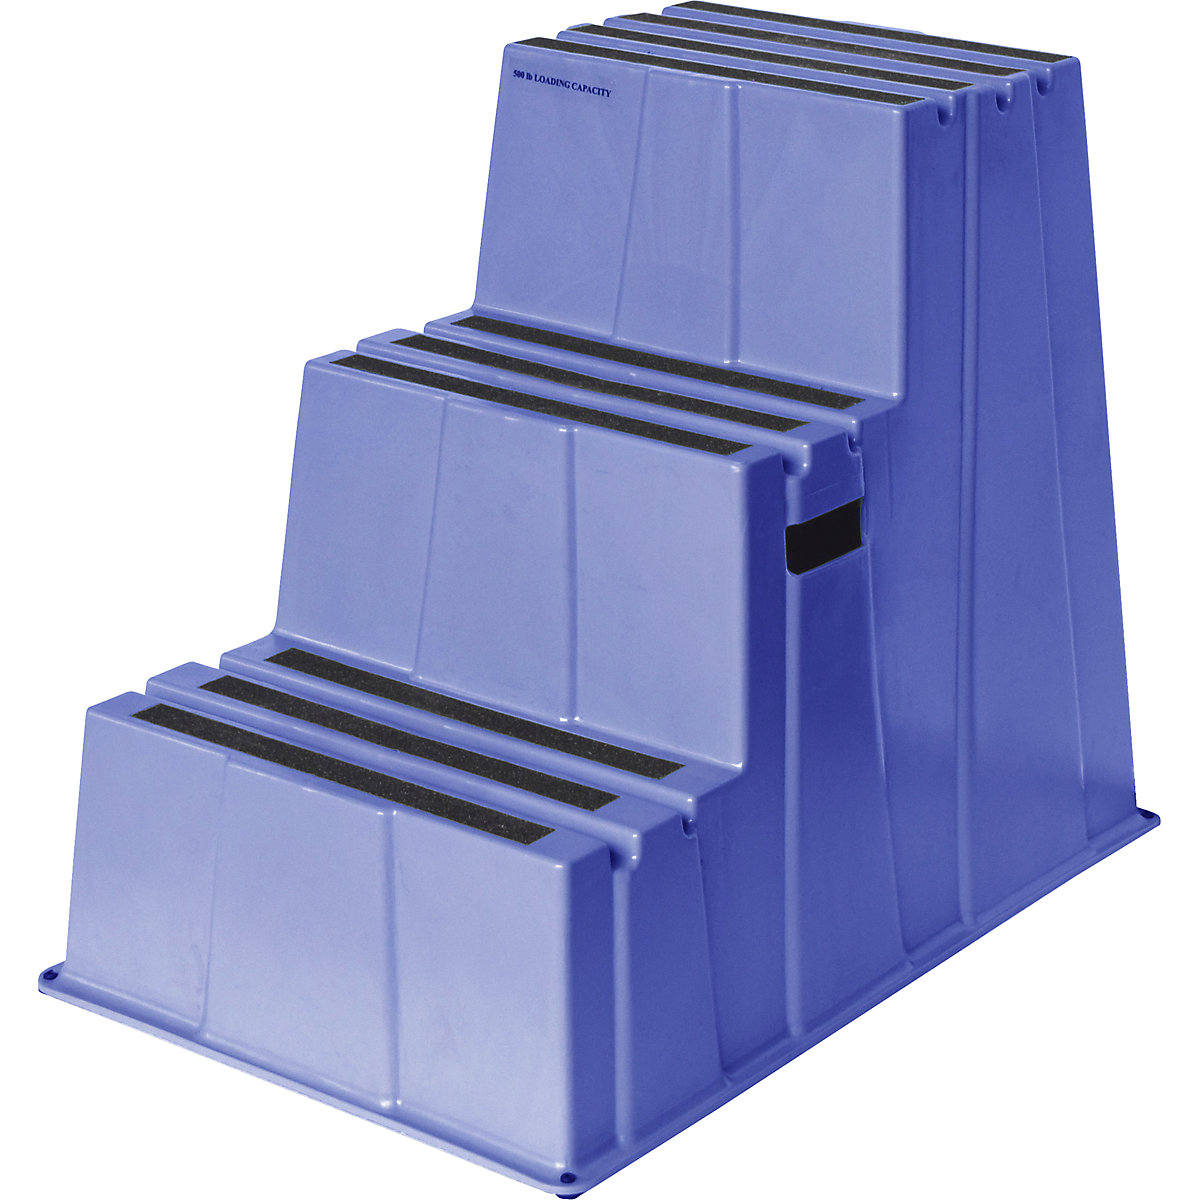 Scară din plastic cu trepte antiderapante – Twinco, capacitate portantă 150 kg, 3 trepte, albastru, minimum 2 buc.-4